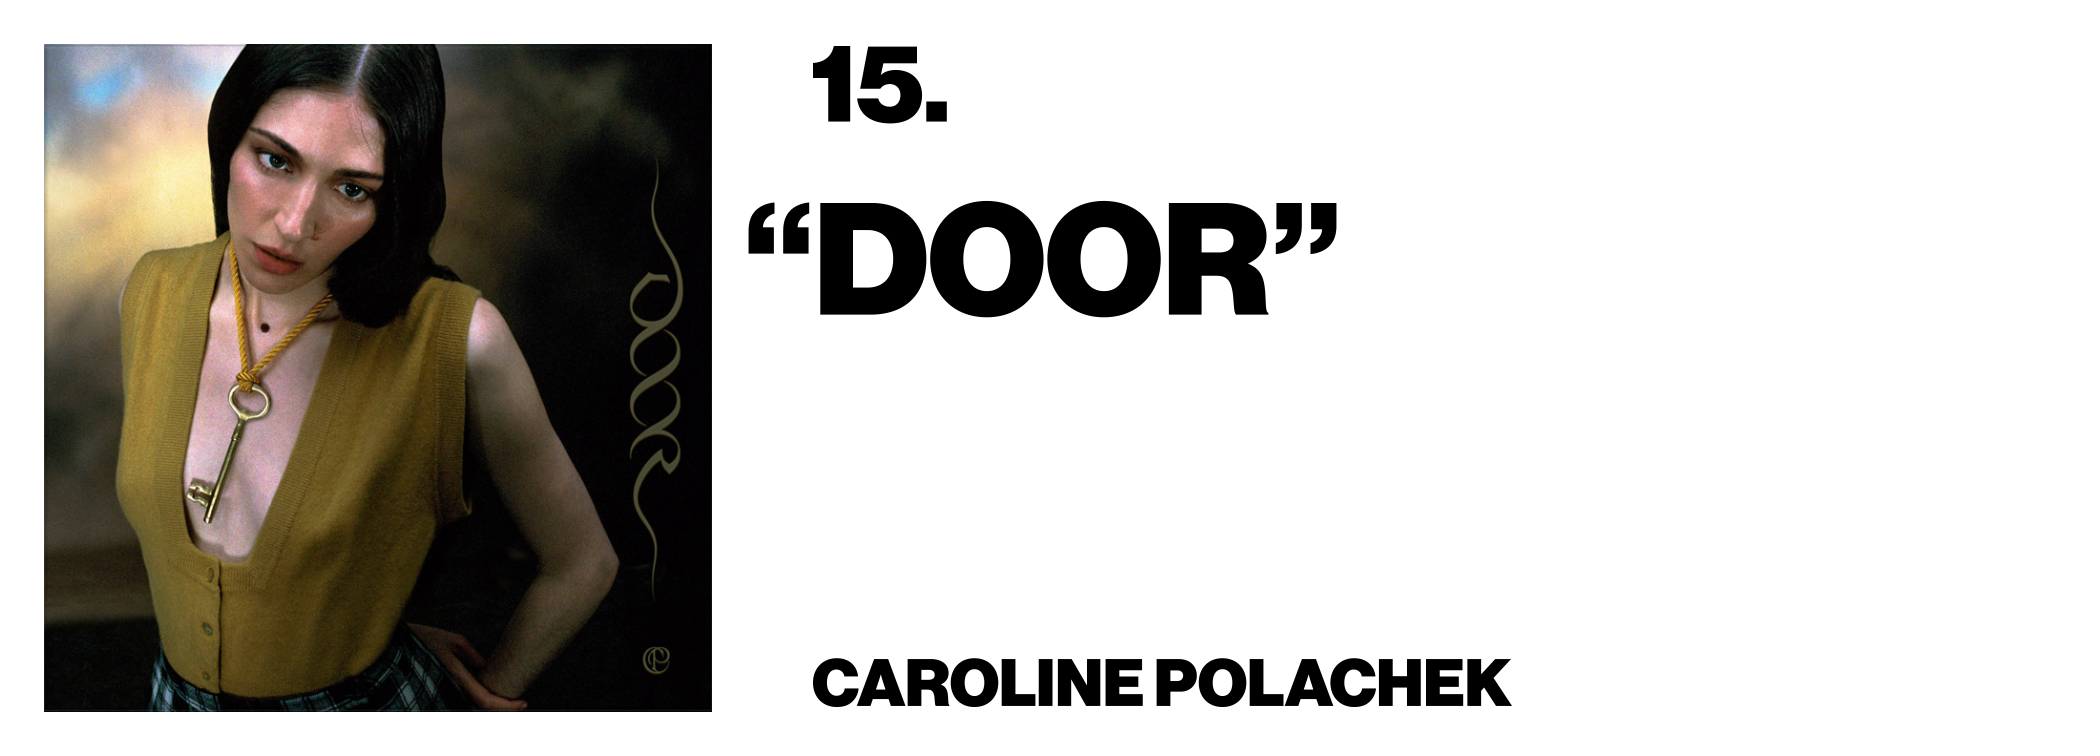 1576524142025-15-Caroline-Polachek-_Door_